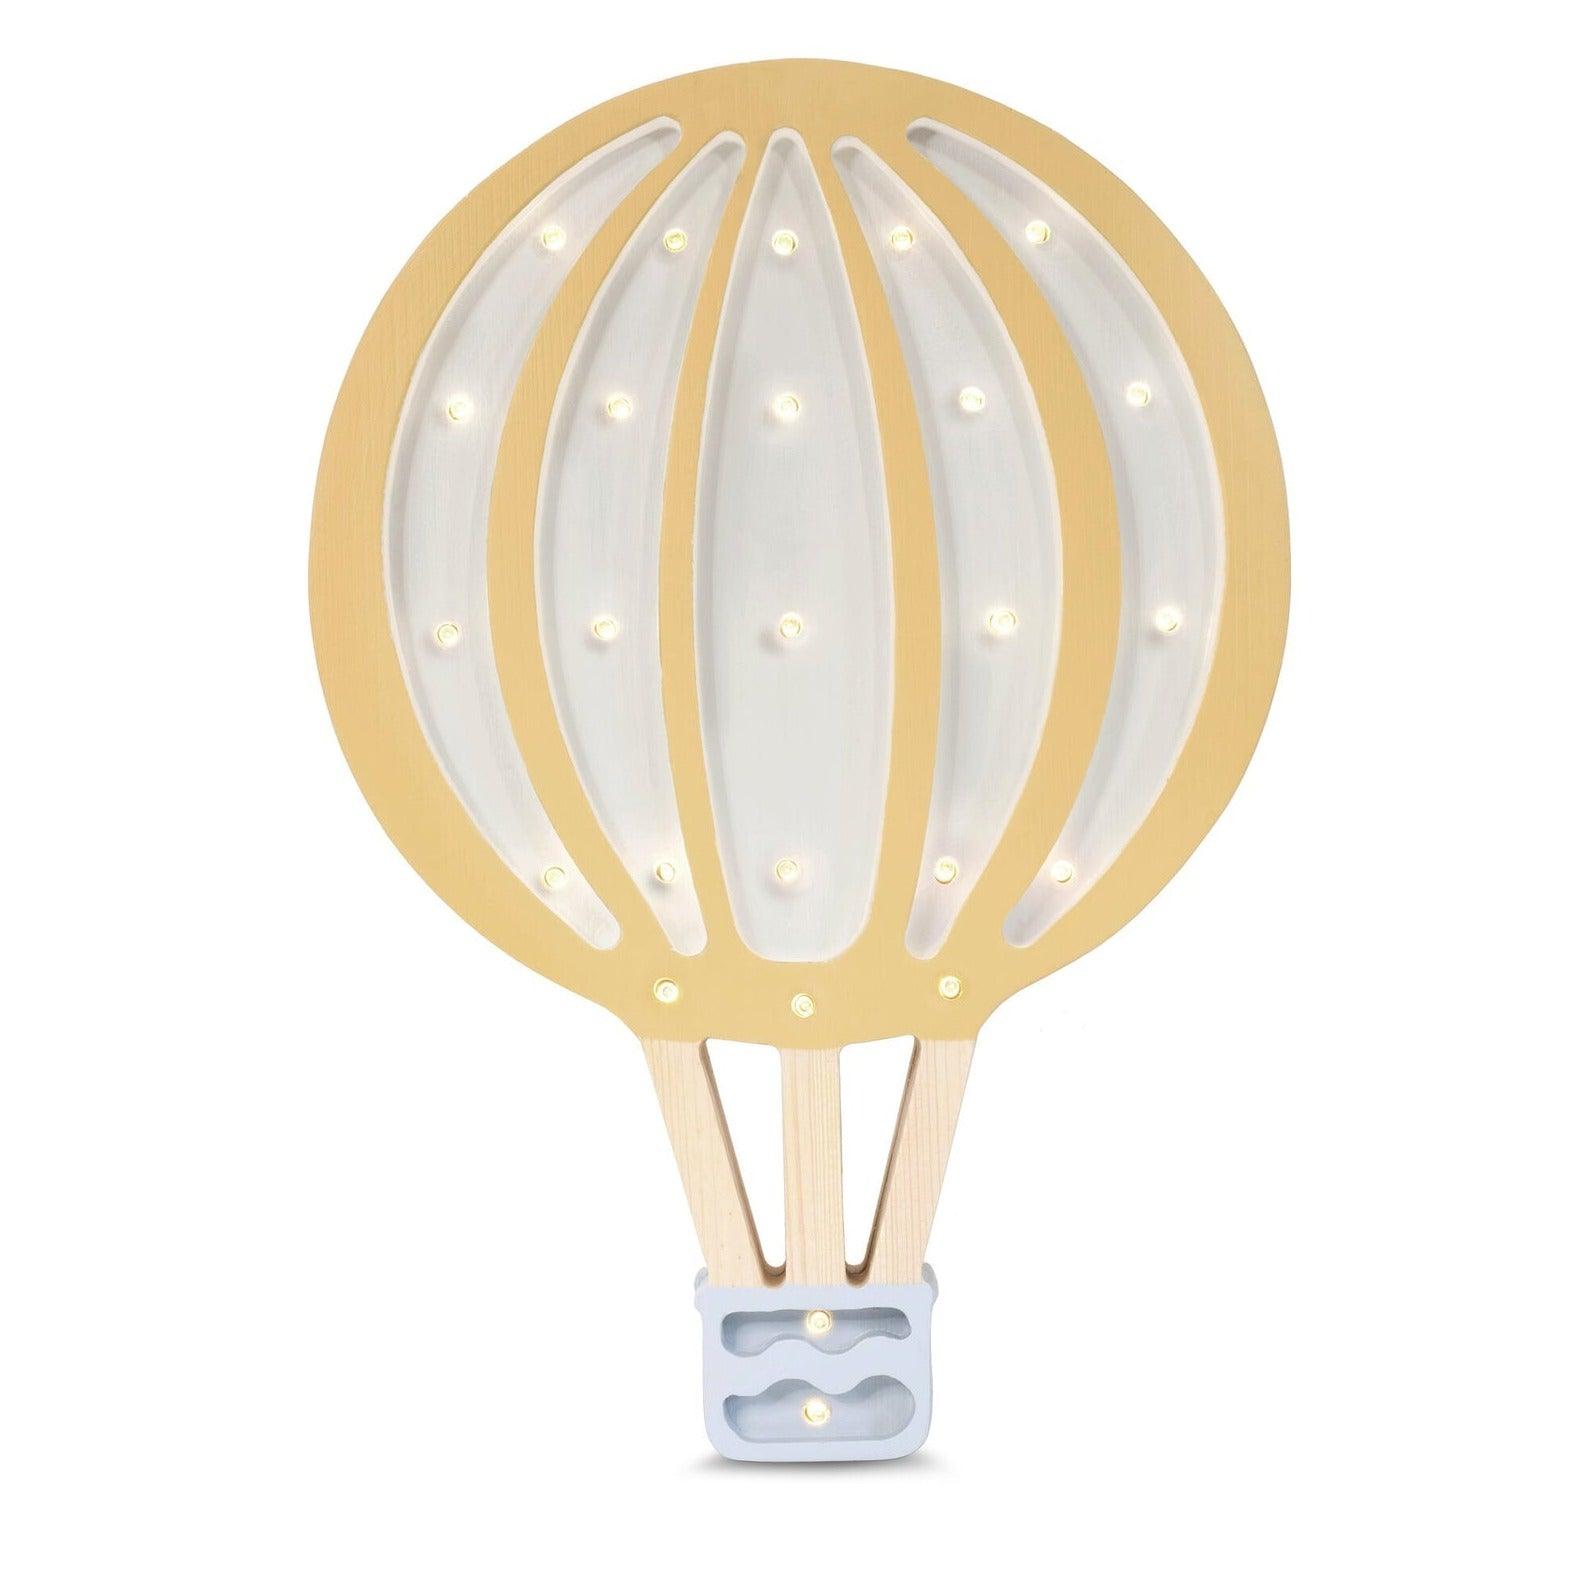 Little Lights: Balloon Lamp